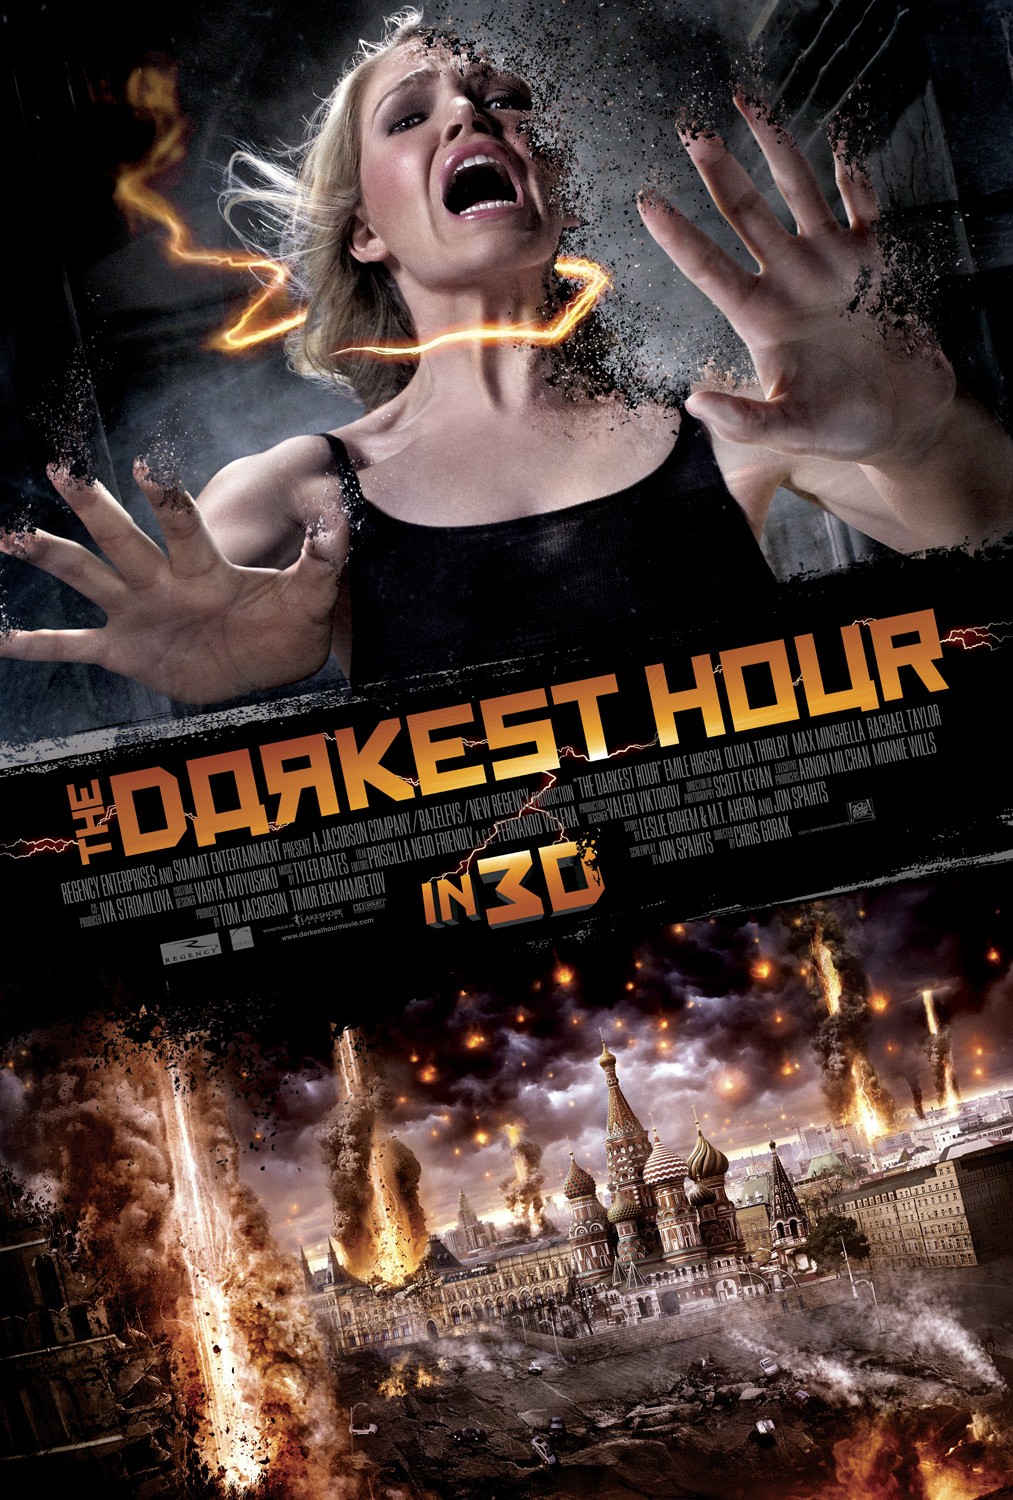 至暗之时.The.Darkest.Hour.2011.BD3D.1080p.BluRay.REMUX.AVC.DTS-HD.MA.5.1-Asmo 29.47GB